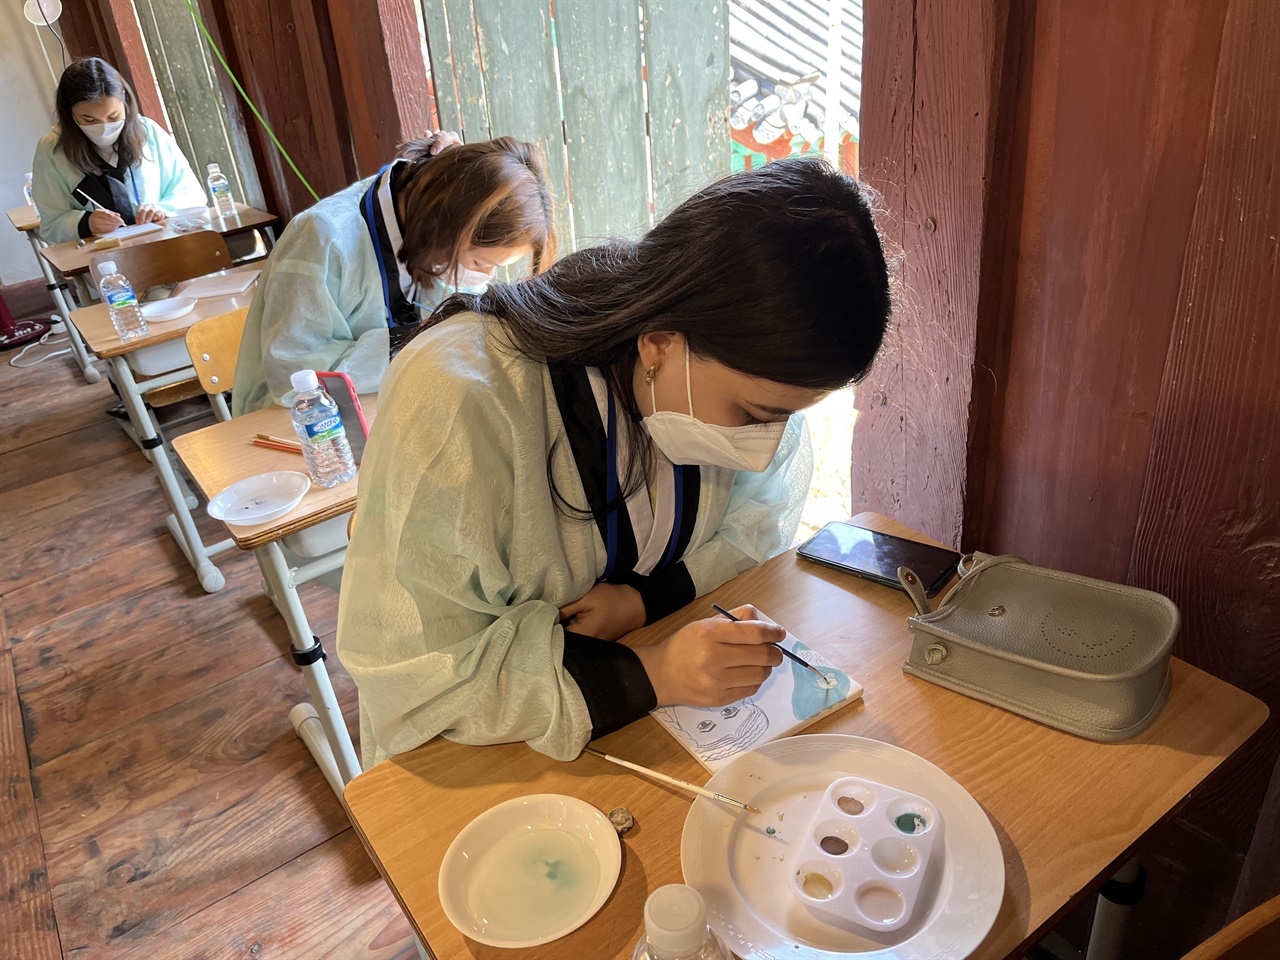 중앙아시아 유학생의 한국 문화체험